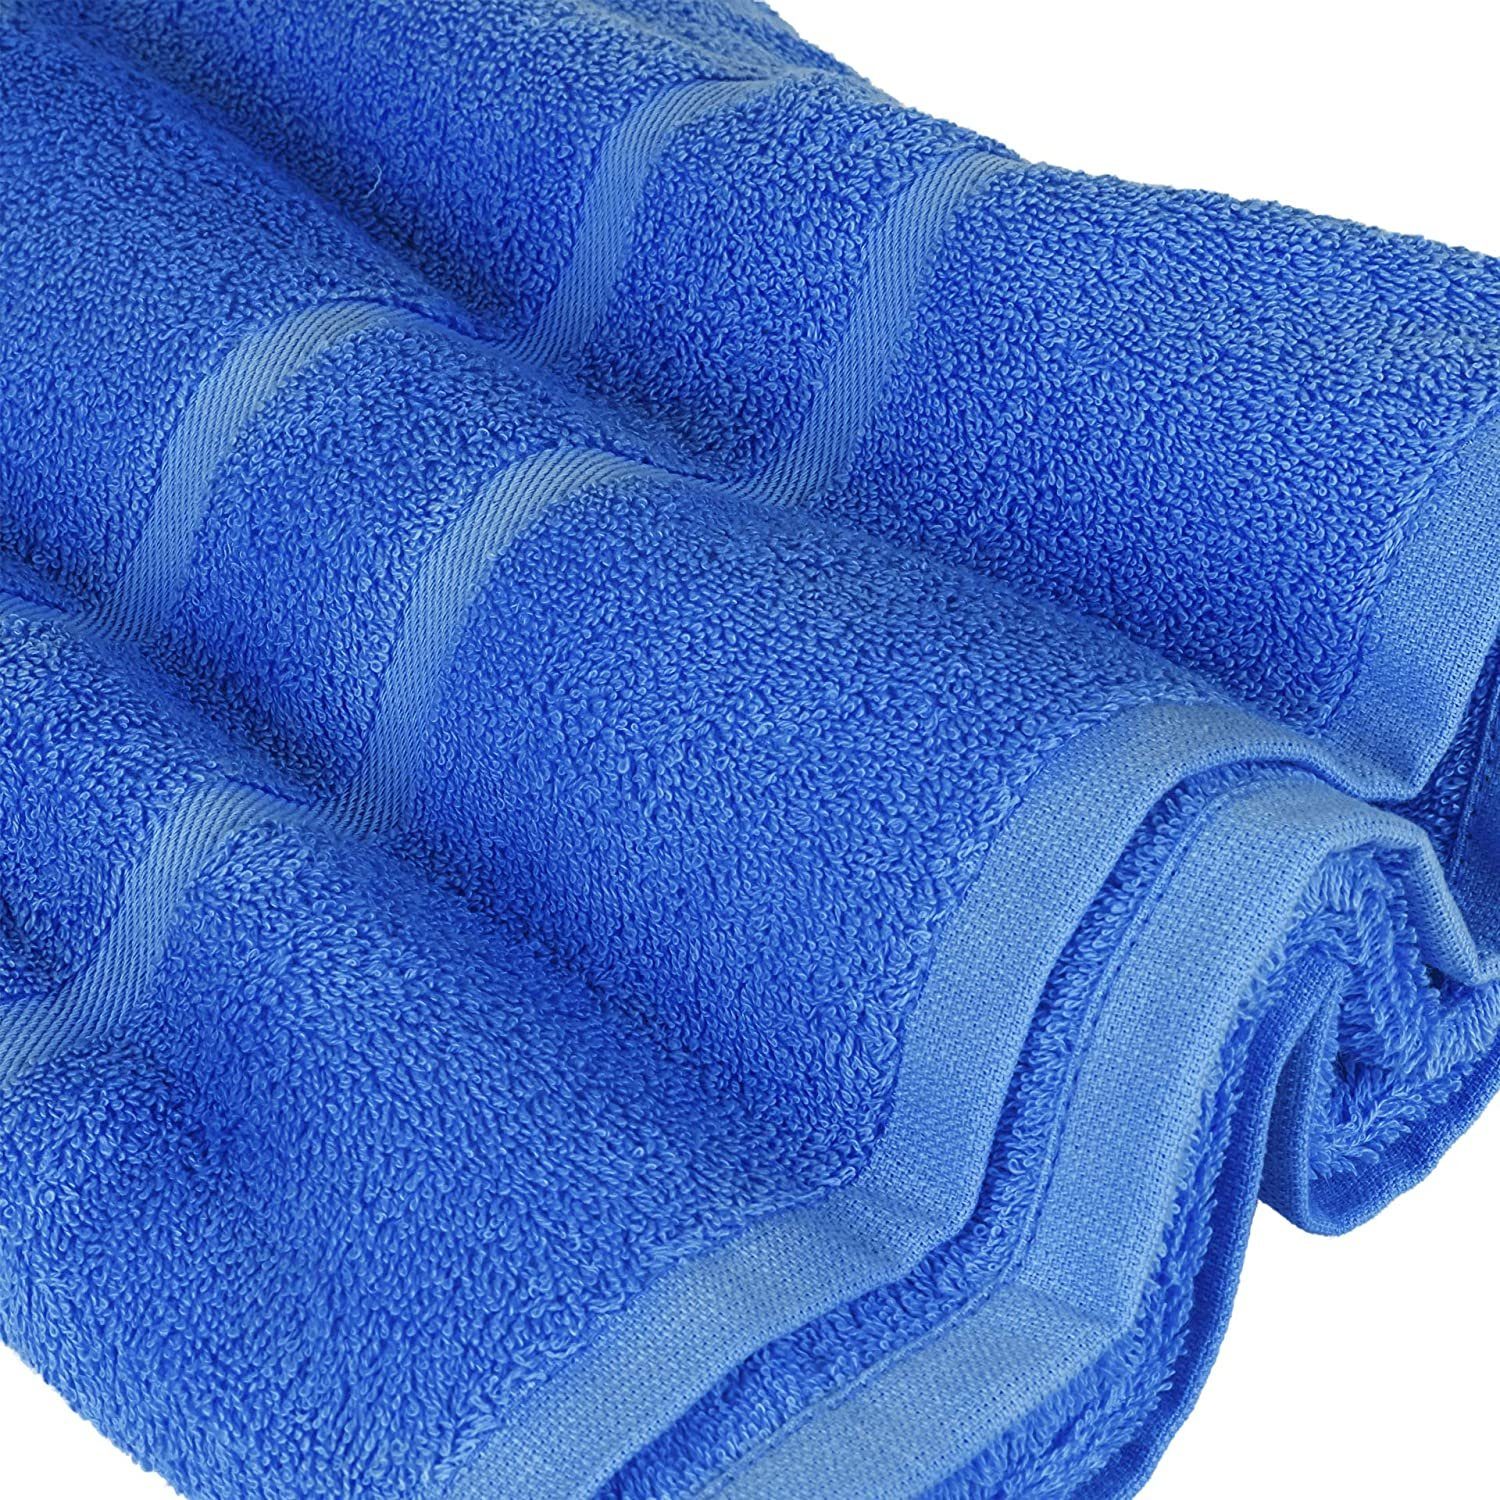 100% Handtuch 1x Handtuch 1x verschiedenen als GSM Teilig) 1x 4er Duschtuch GSM 100% Baumwolle Gästehandtuch SET Blau 1x Baumwolle Farben (4 500 StickandShine in Frottee 500 Handtuch Set Pack, Badetuch